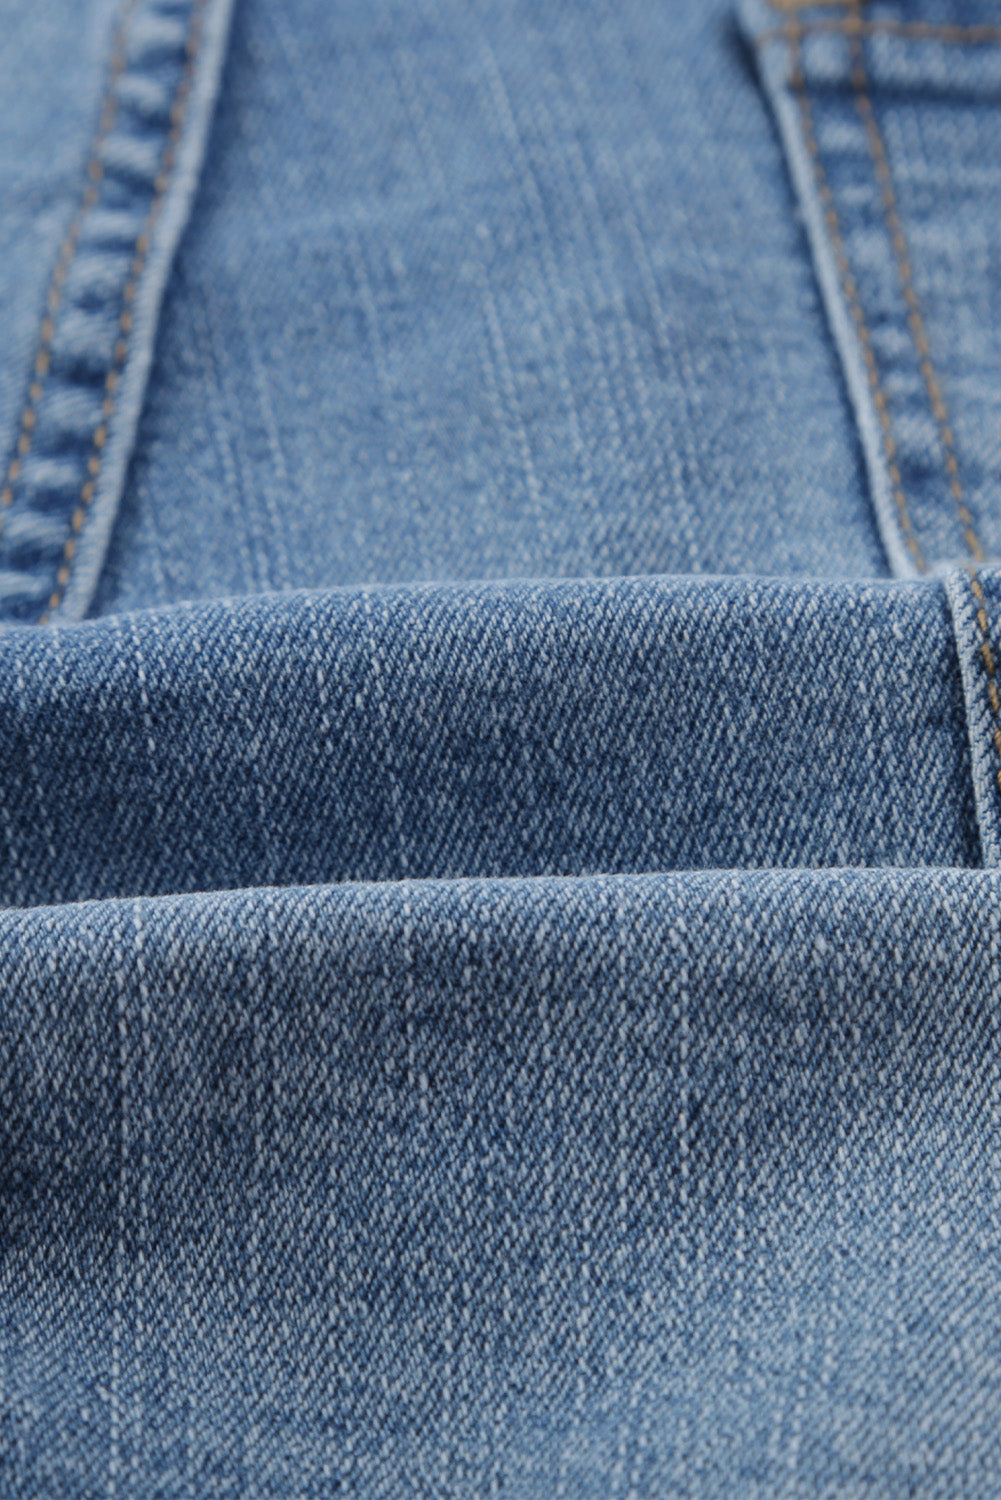 Pantaloncini di jeans vintage sbiaditi e invecchiati